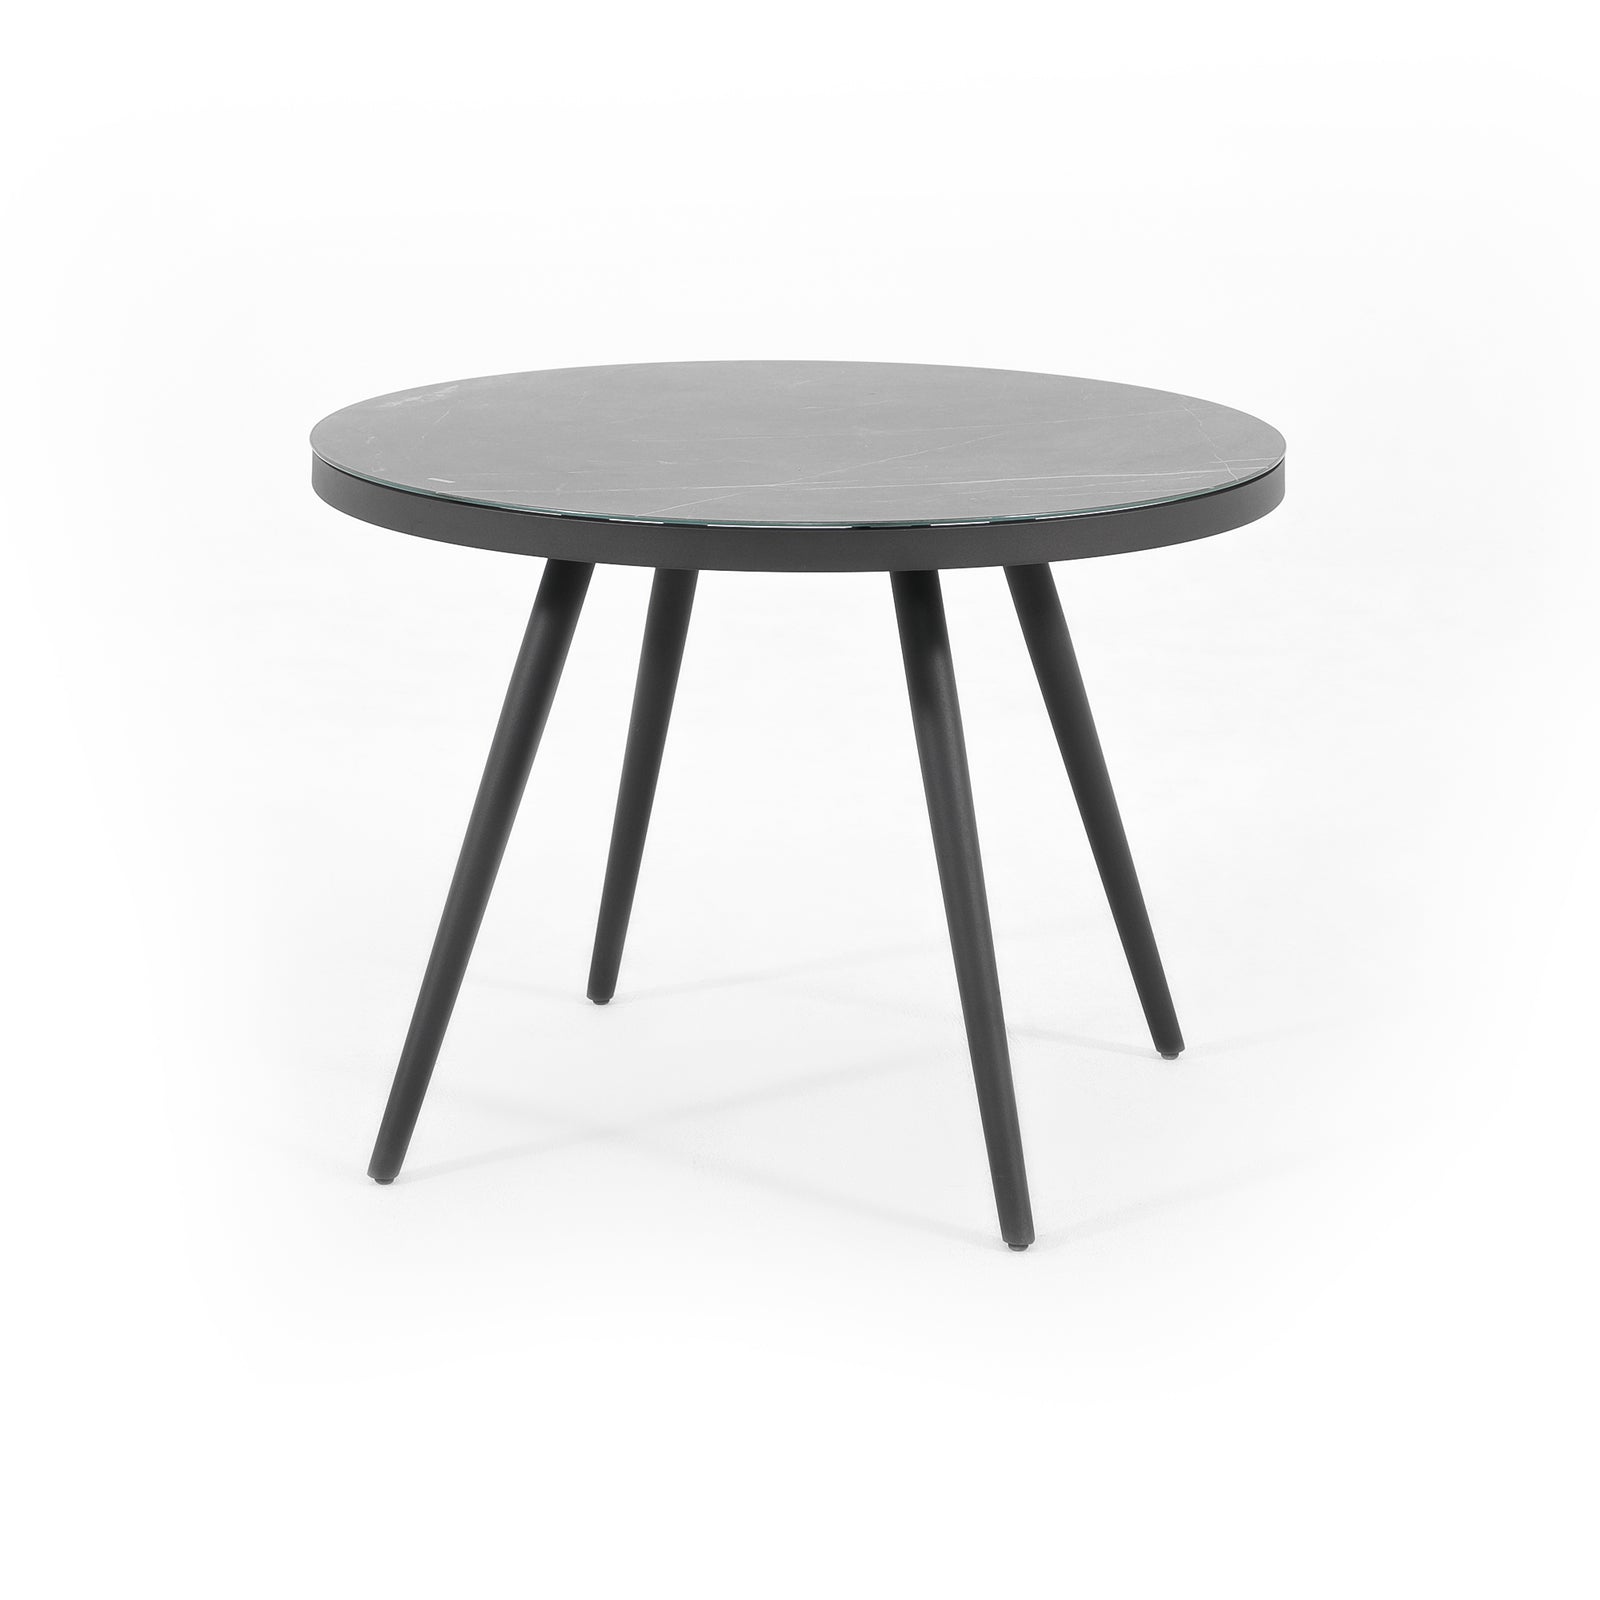 Burano Grey Aluminum dining table, round design, tempered glass-Jardina Furniture